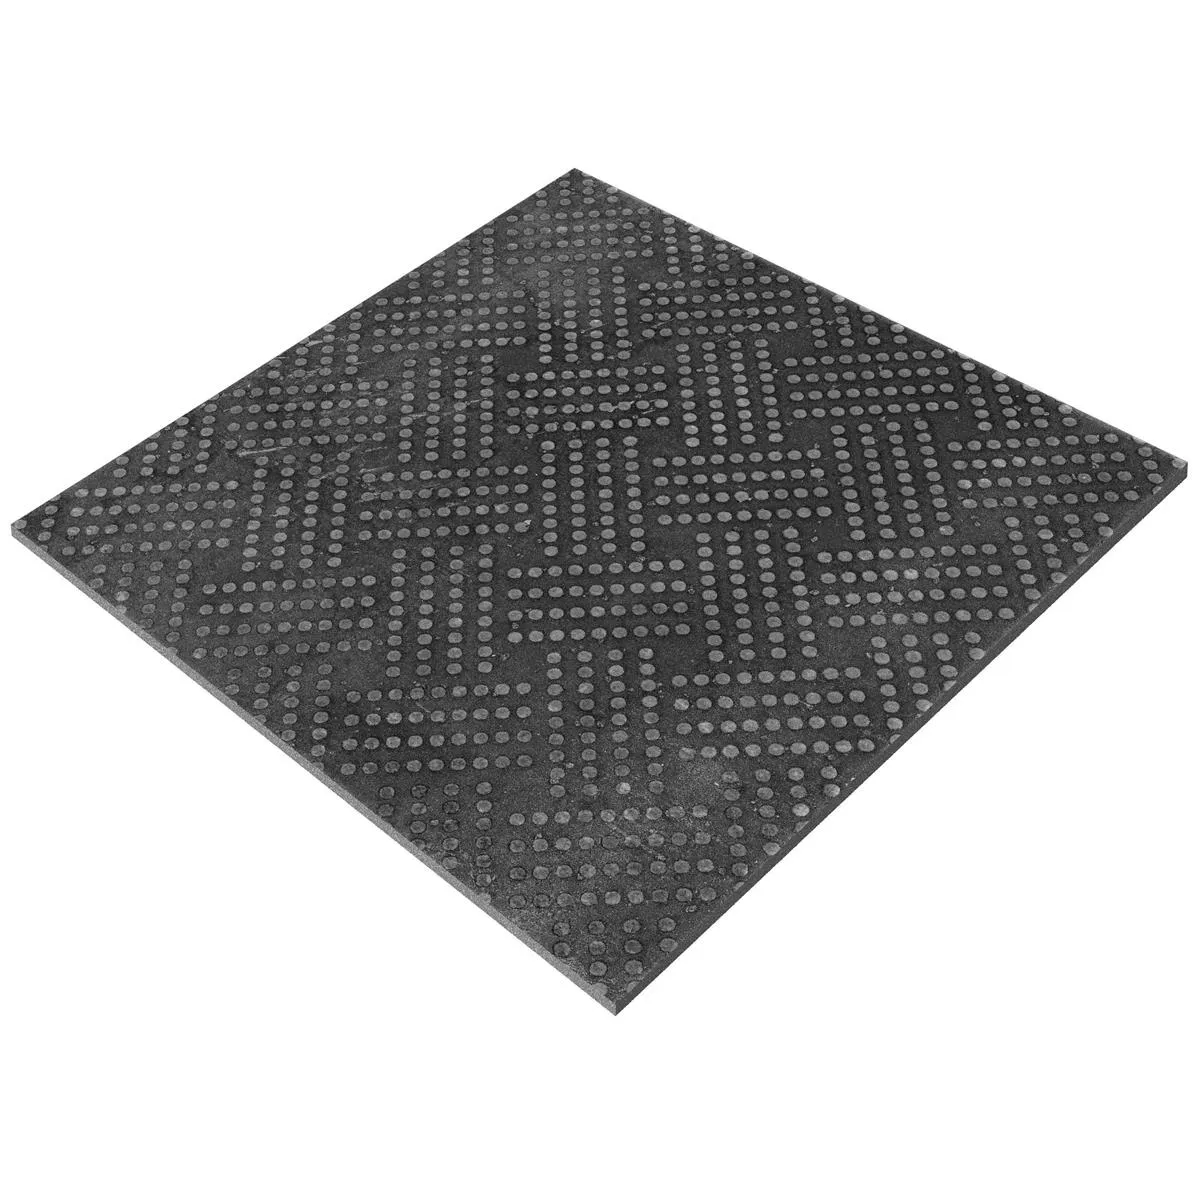 Bodenfliesen Chicago Metalloptik Anthrazit R9 - 18,5x18,5cm Pattern 1